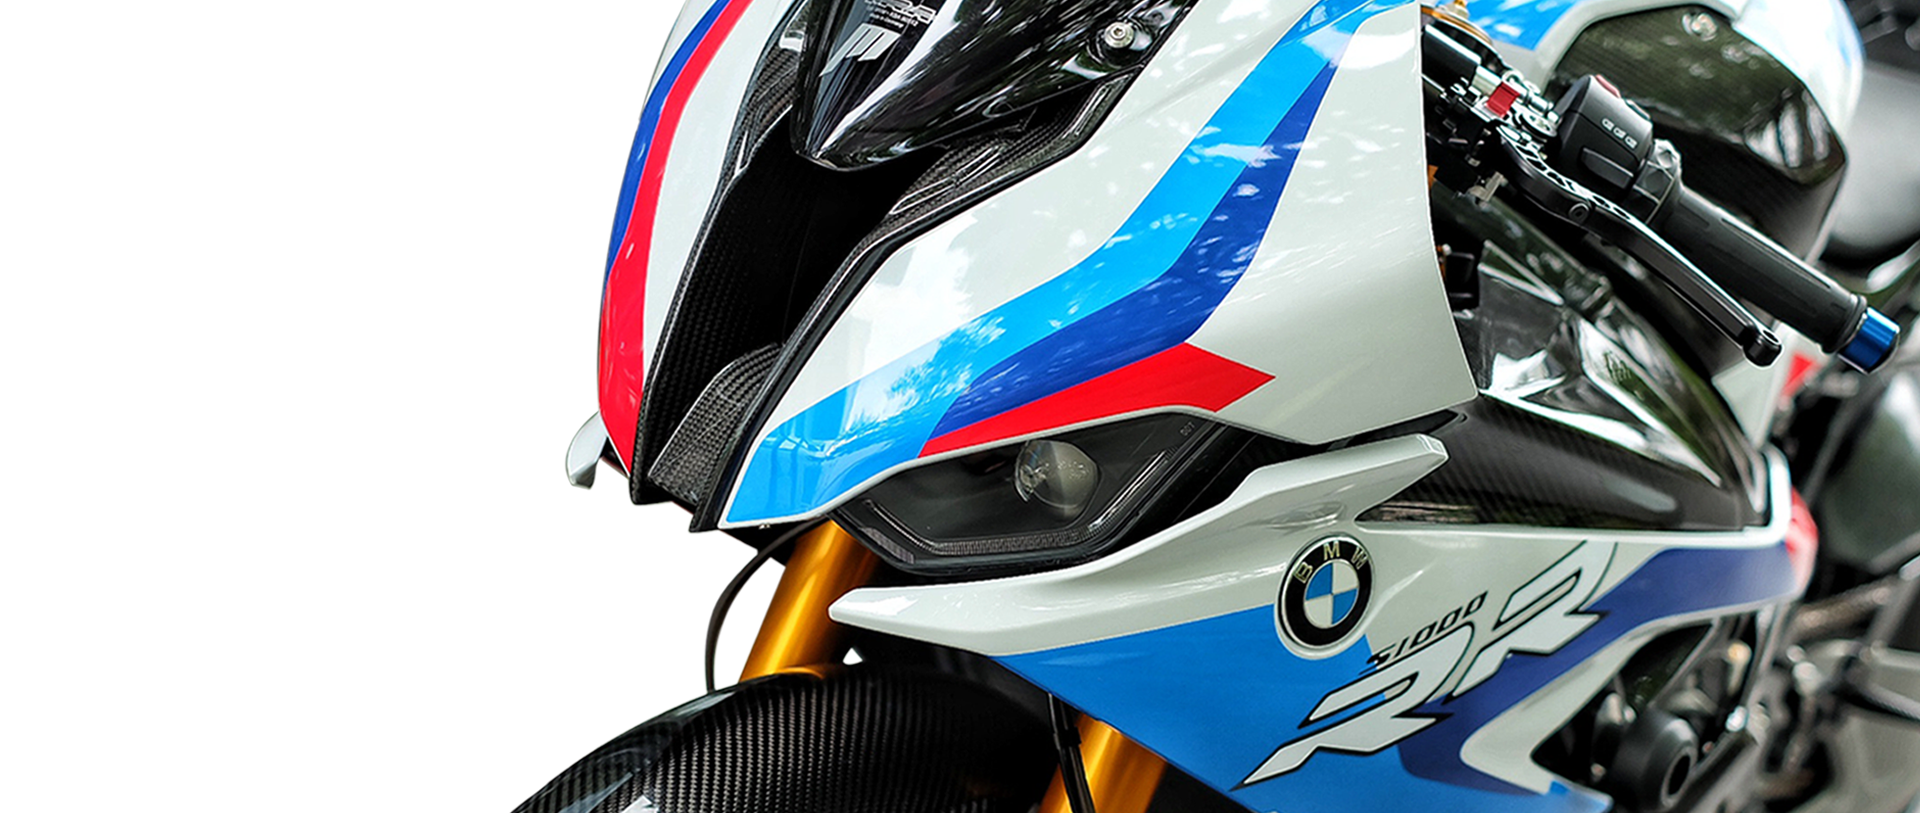 BMW S1000RR 2020 tricolor mra windscreen lightech อุดกระจกชิวหน้าของแต่งรถ superbike